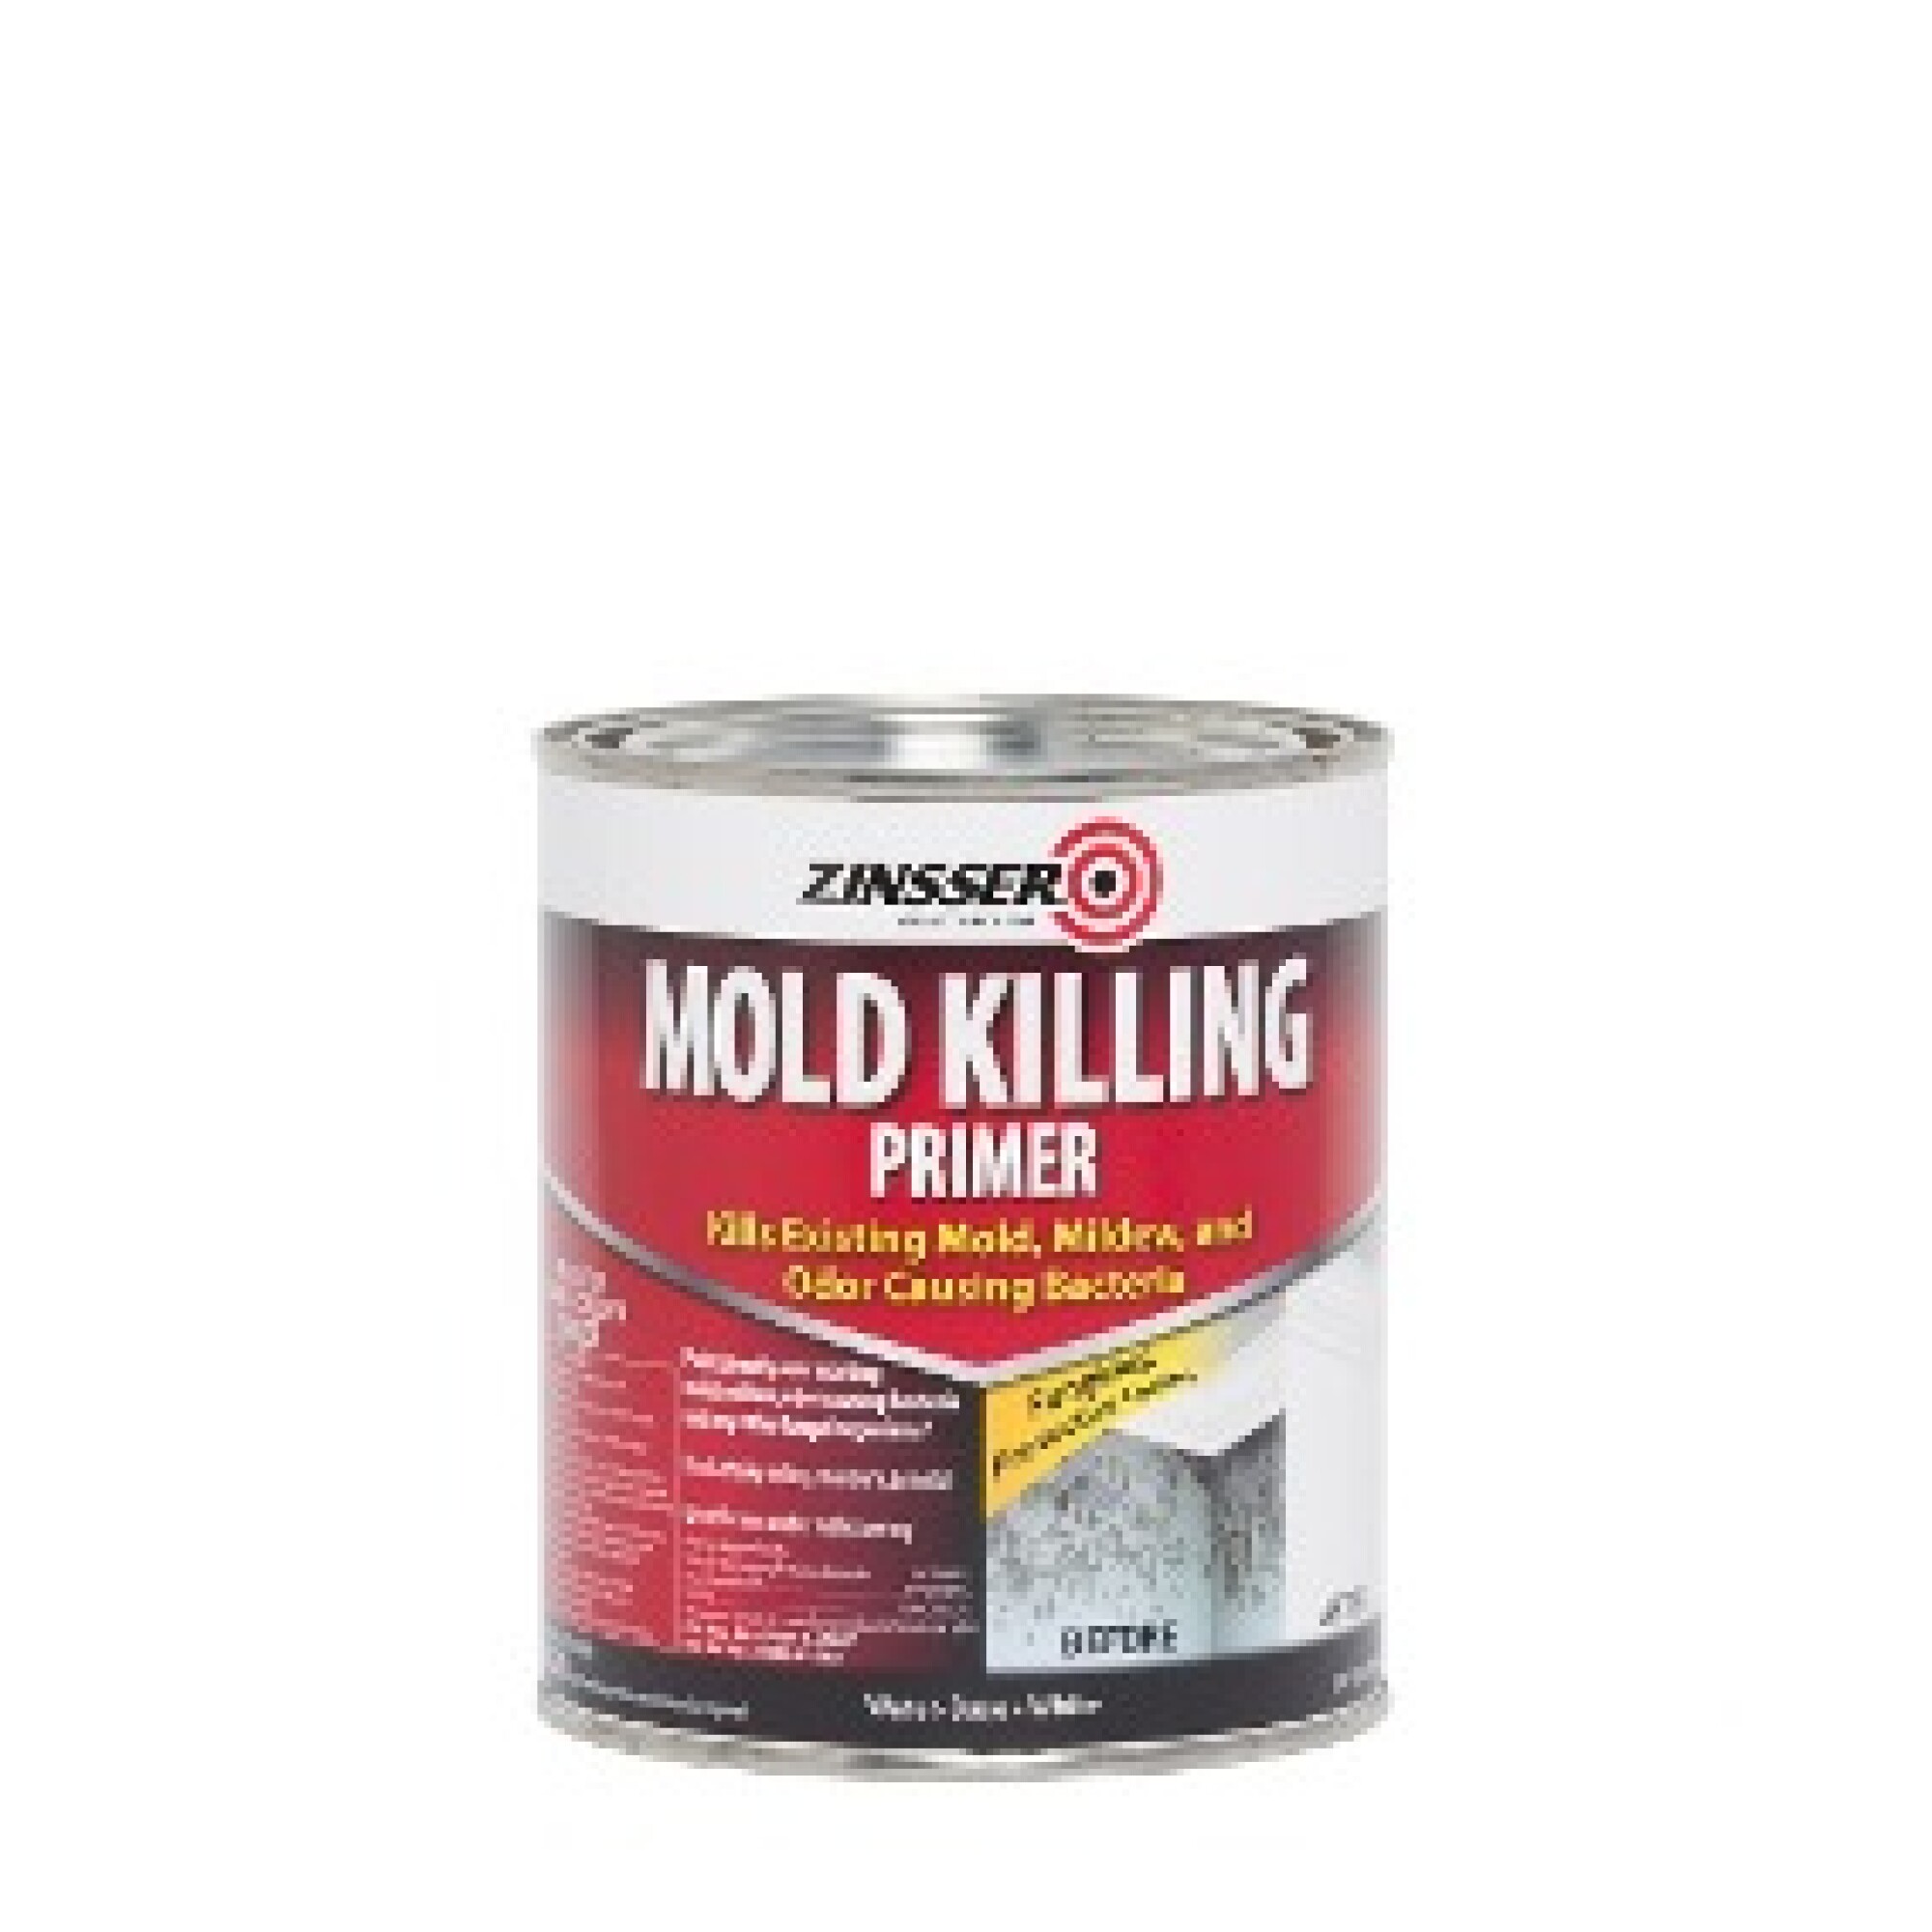 Fondo Eliminador de Hongo y Moho Zinsser Mold Killing Primer 946 ml